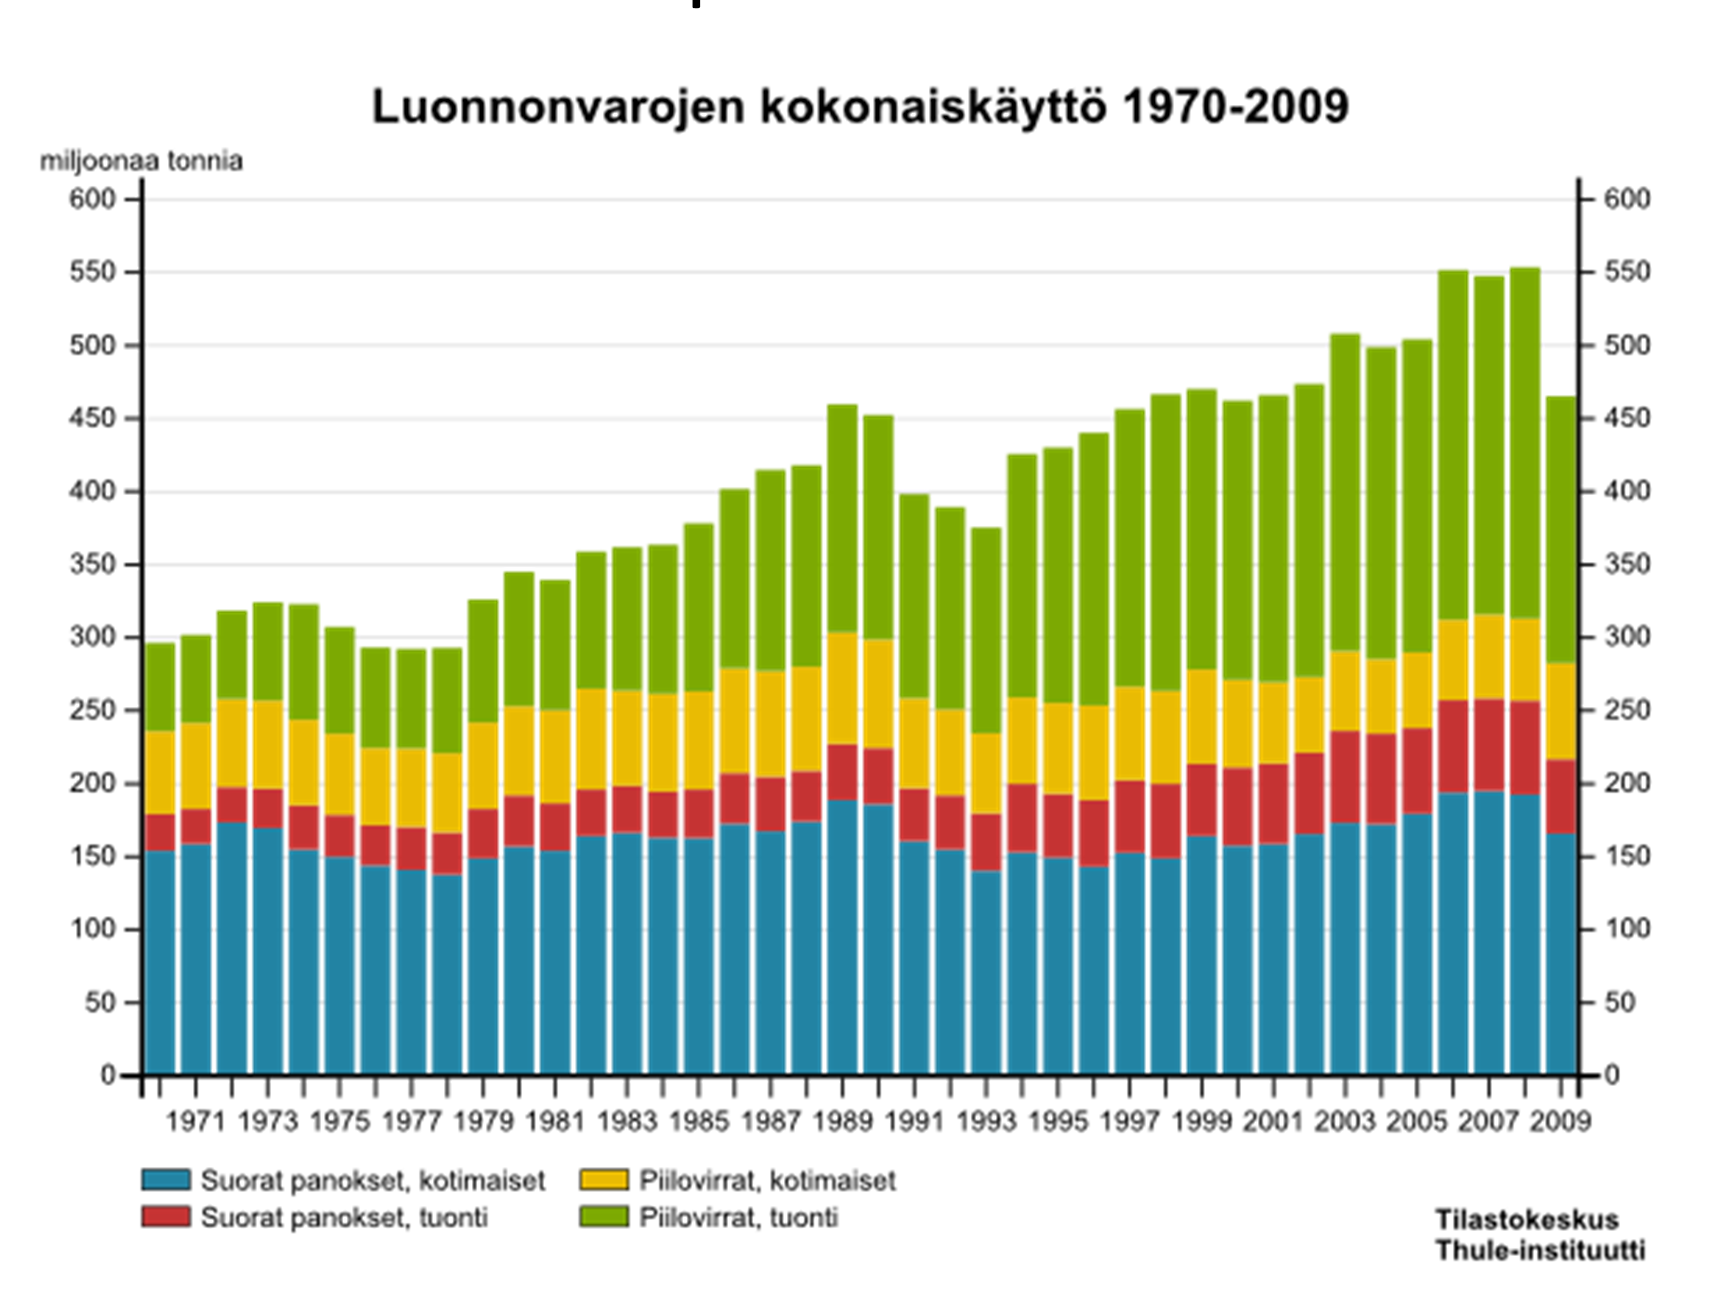 (3) Suomen luonnonvarojen kokonaiskäyttö on